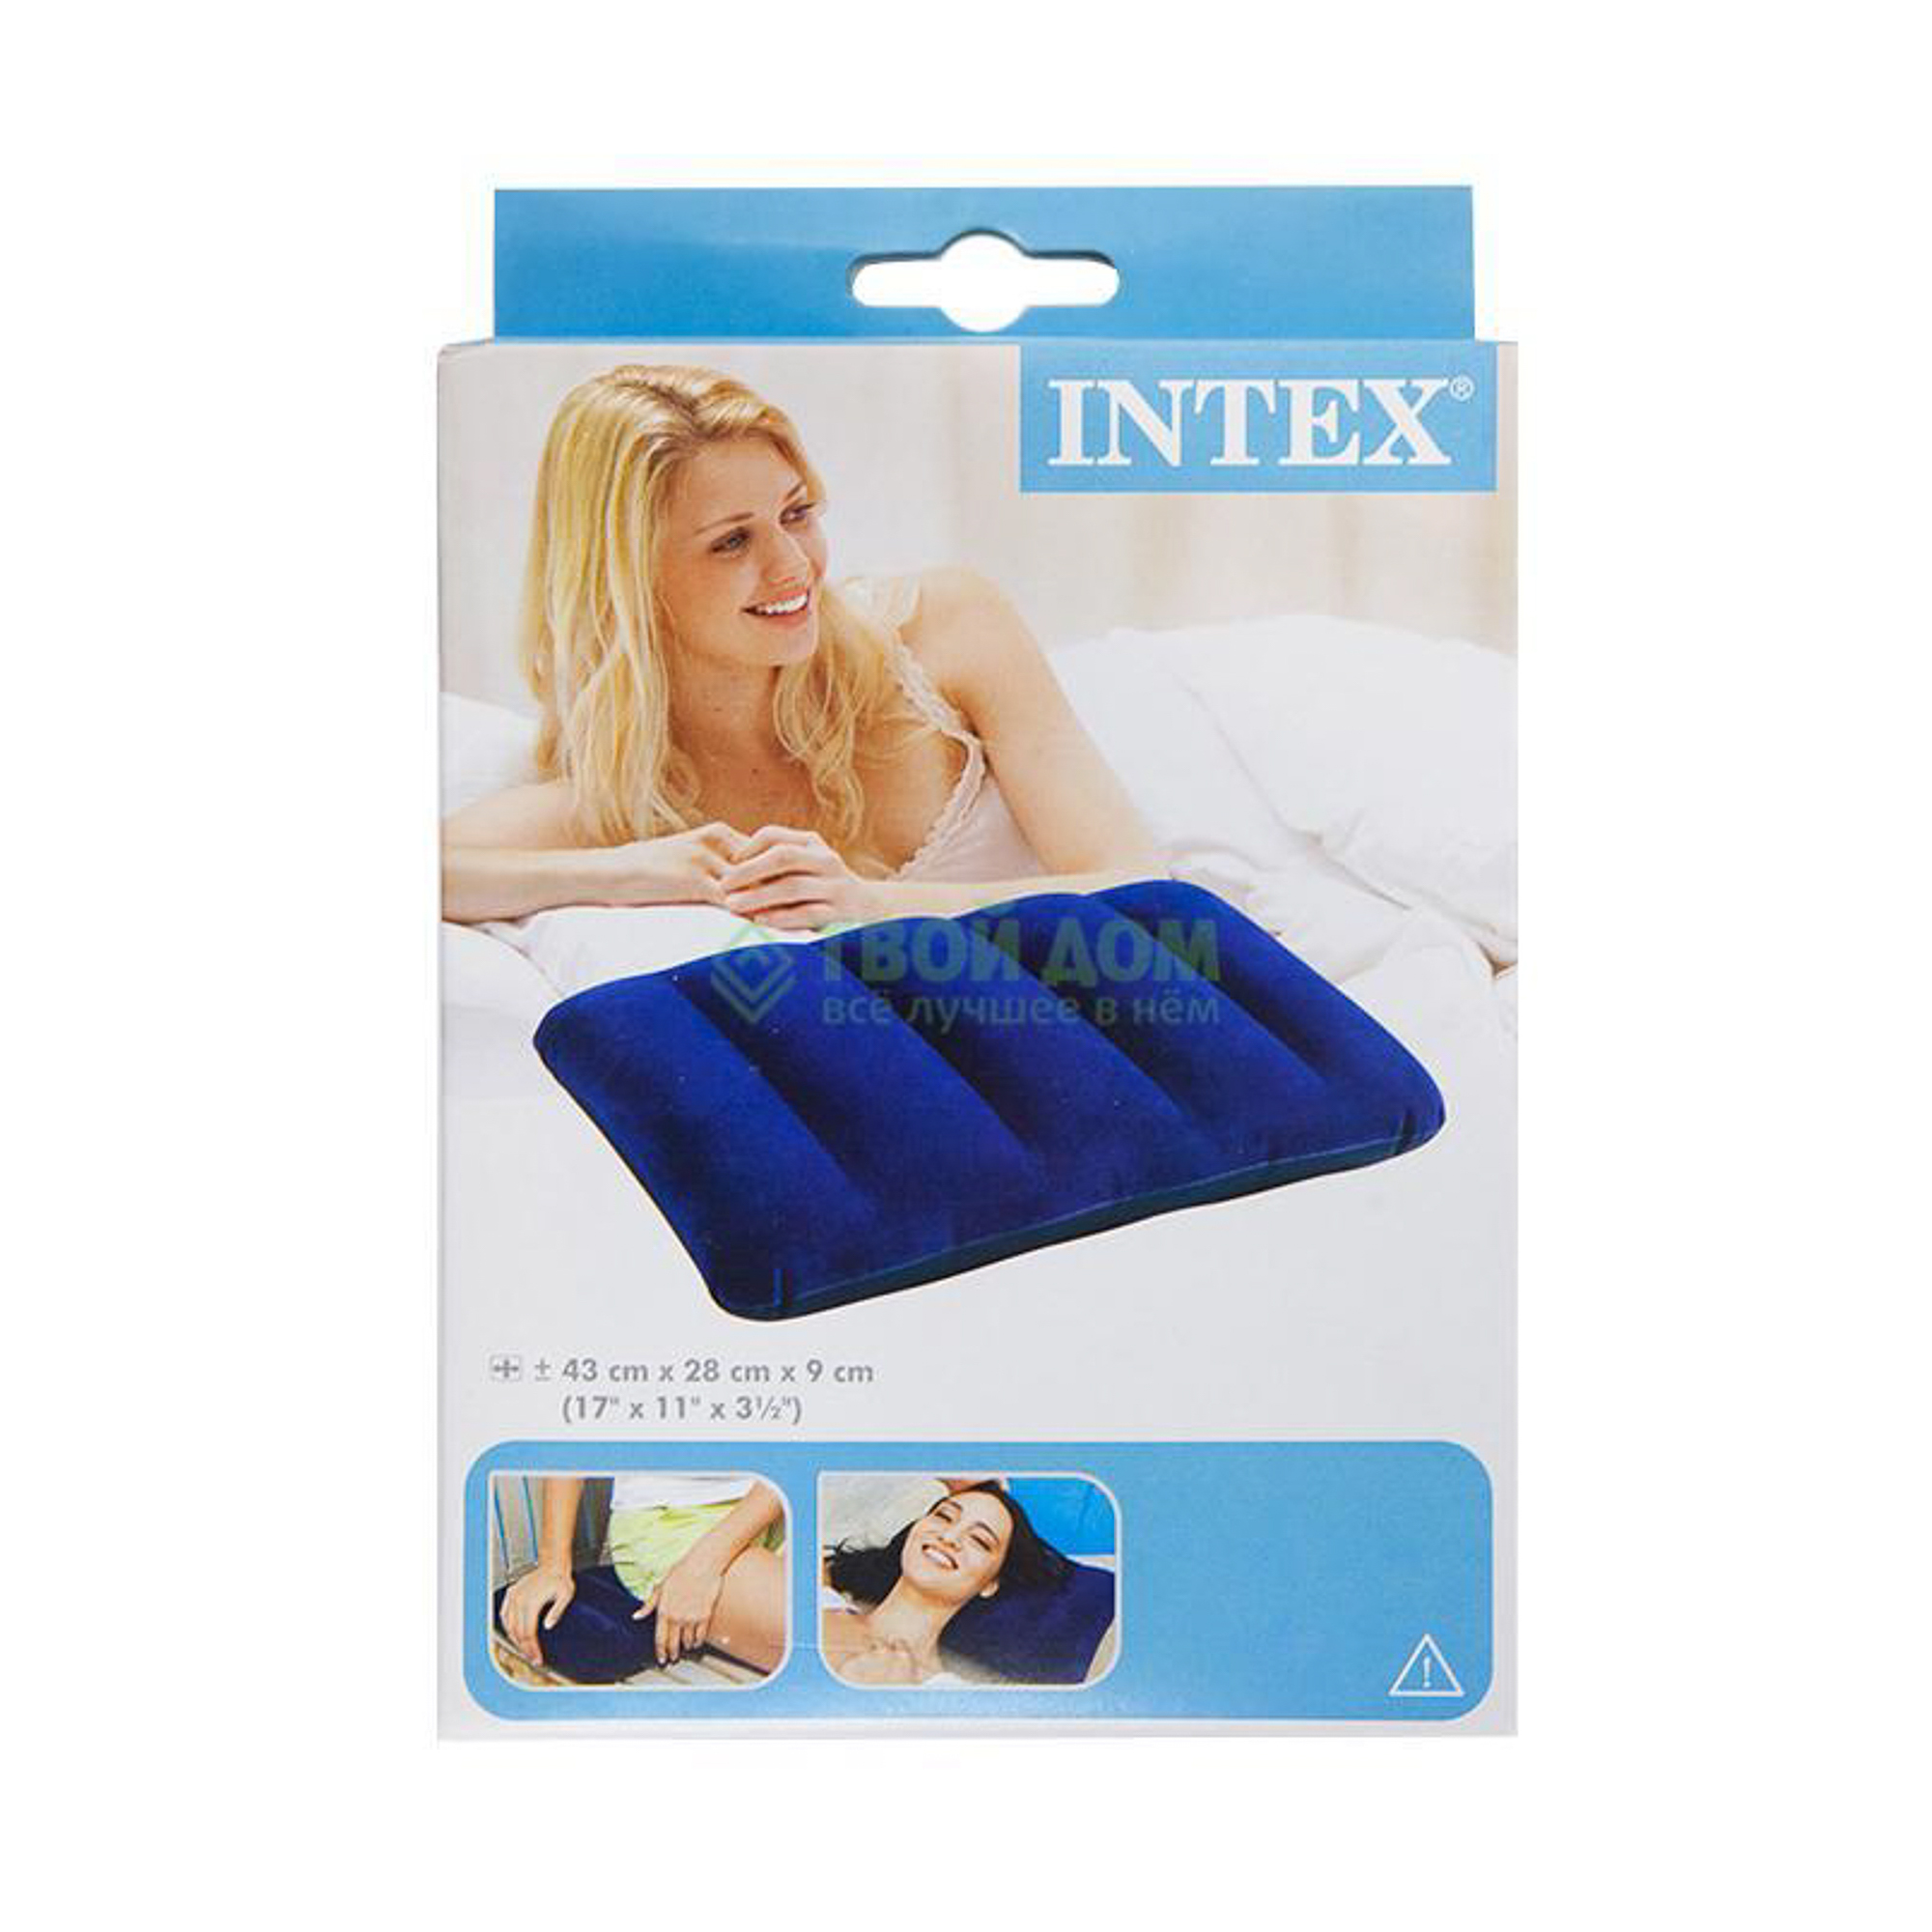 Надувная подушка Intex 43х28 см (68672), цвет синий